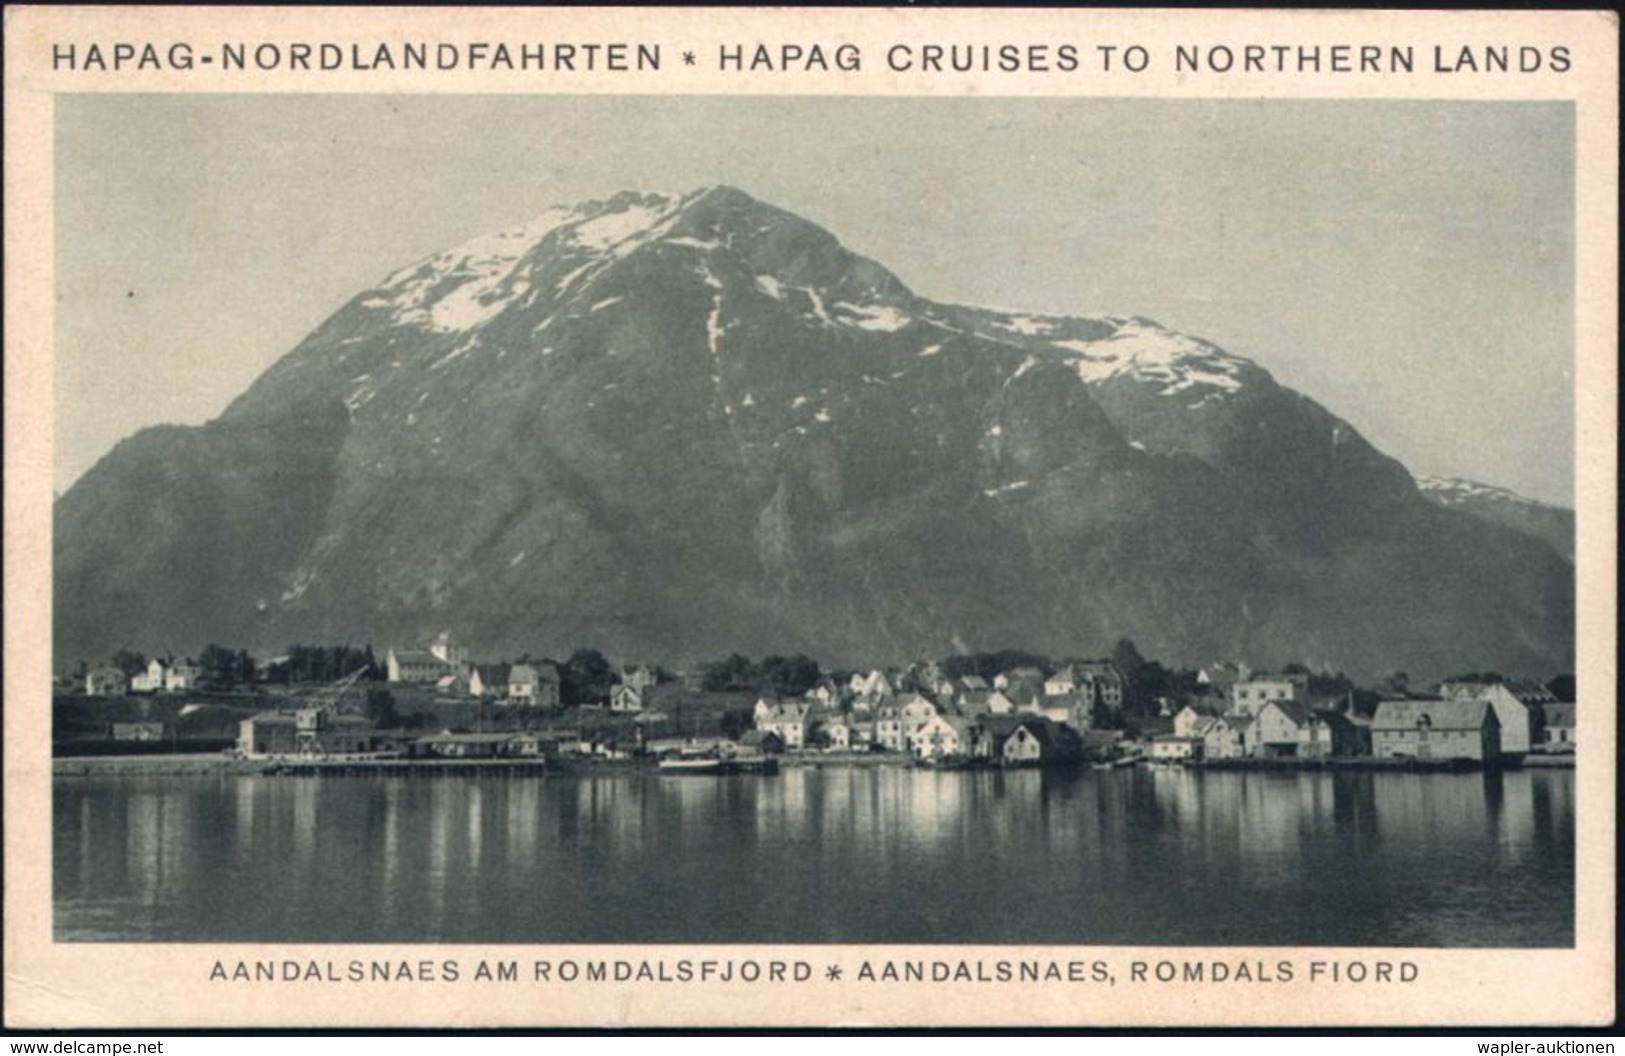 HAMBURG/ 1/ HAMBURG-AMERIKA LINIE/ NORDLANDFAHRTEN/ HAL 1932 (7.7.) AFS 003 Pf. (Kreuzfahrtschiff) Auf Reederei-Telegram - Arktis Expeditionen